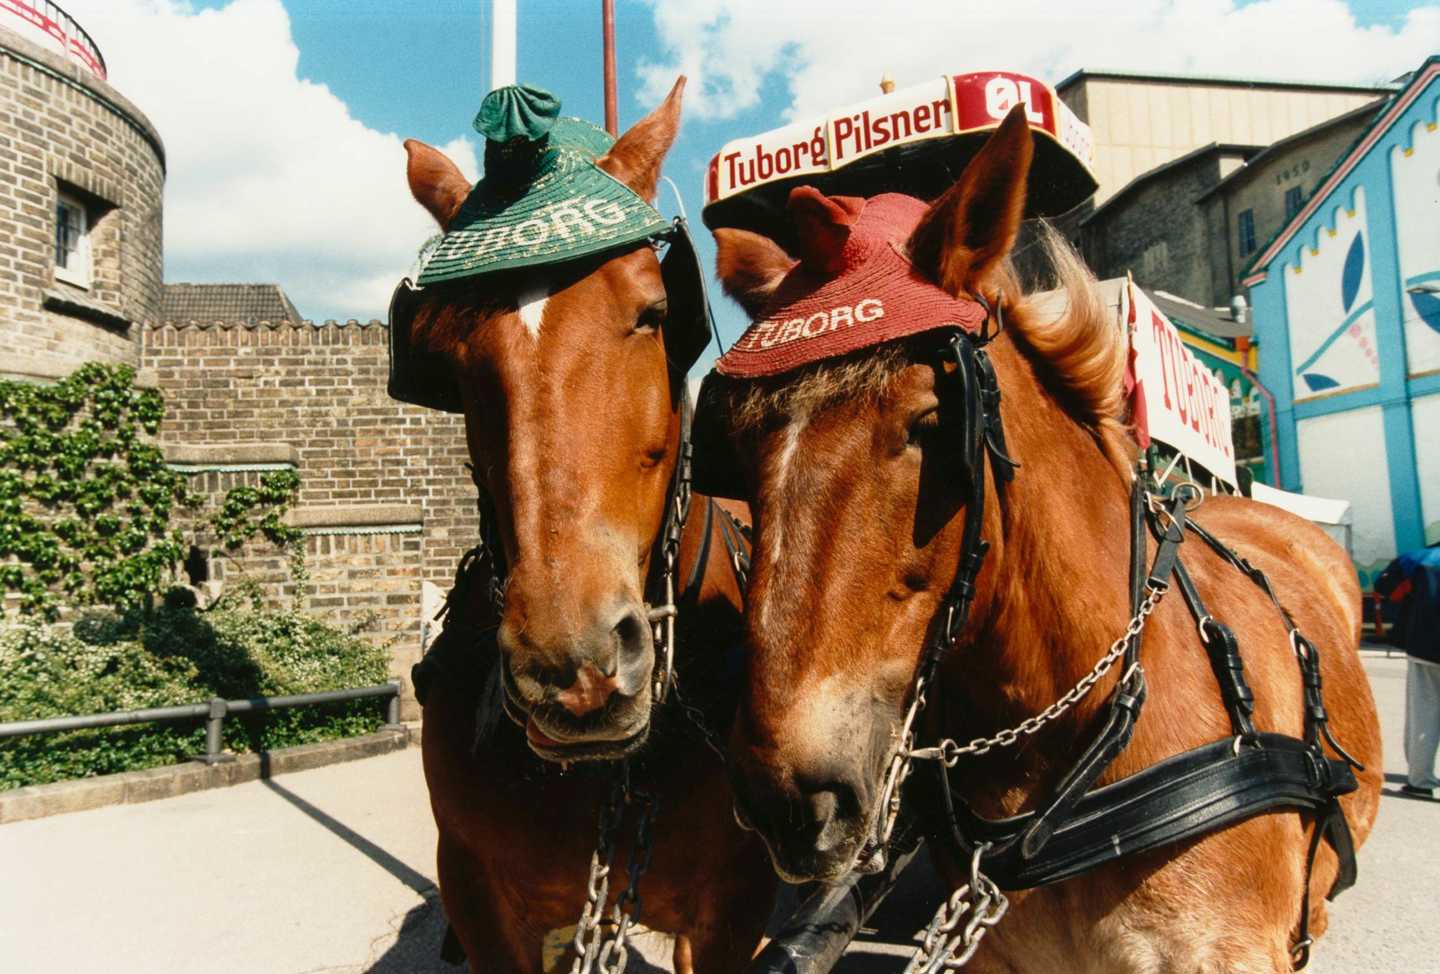 To Tuborgheste spændt for en Tuborgvogn. Hestene har henholdsvis en grøn og en rød hat på.